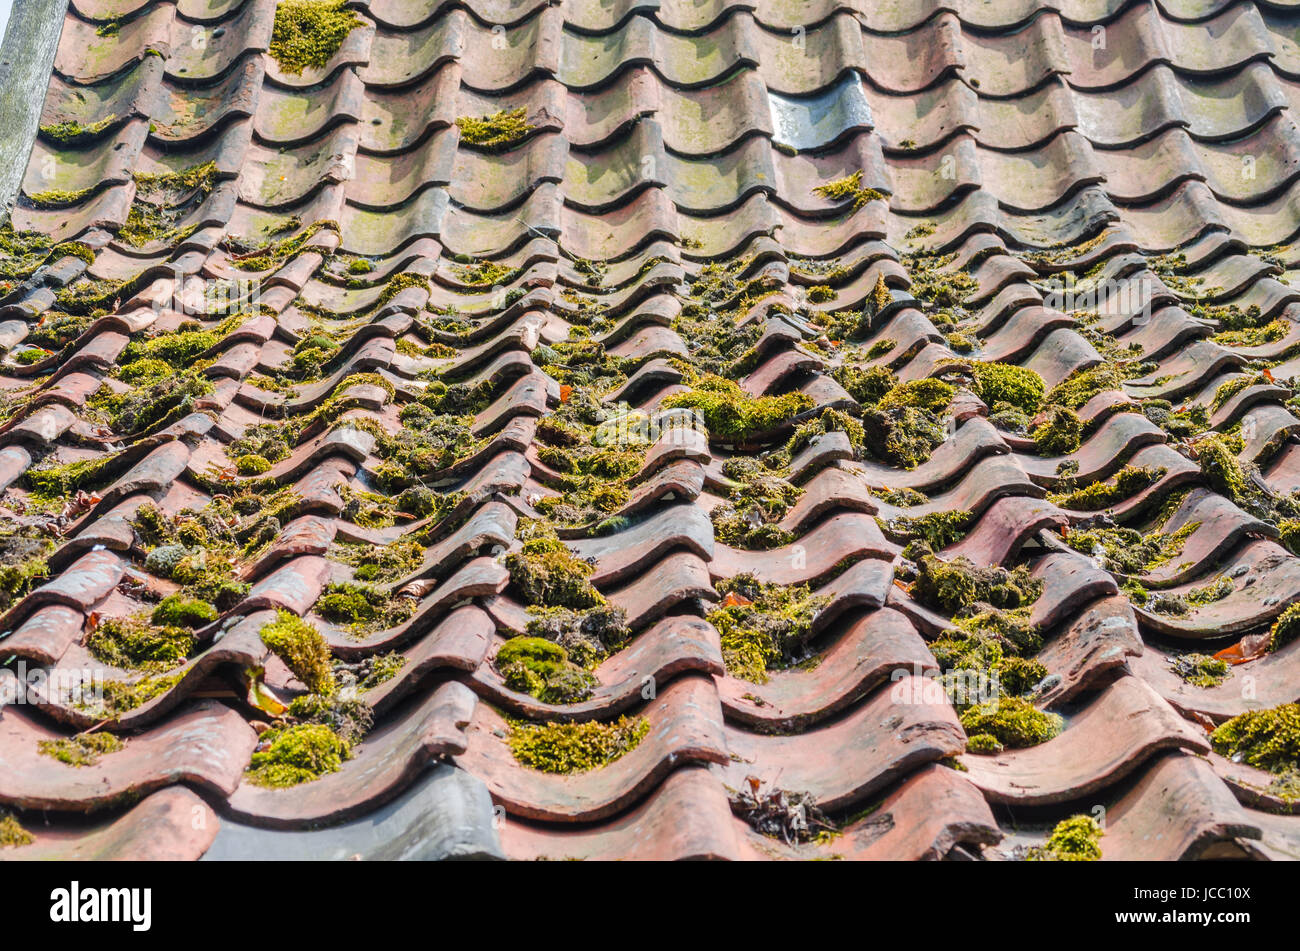 Veraltete Dachpfannne, Ziegel Grünbildung und anschließenden Moosbewuchs kommt häufig auch durch verbesserte Umweltbedingungen. Stock Photo